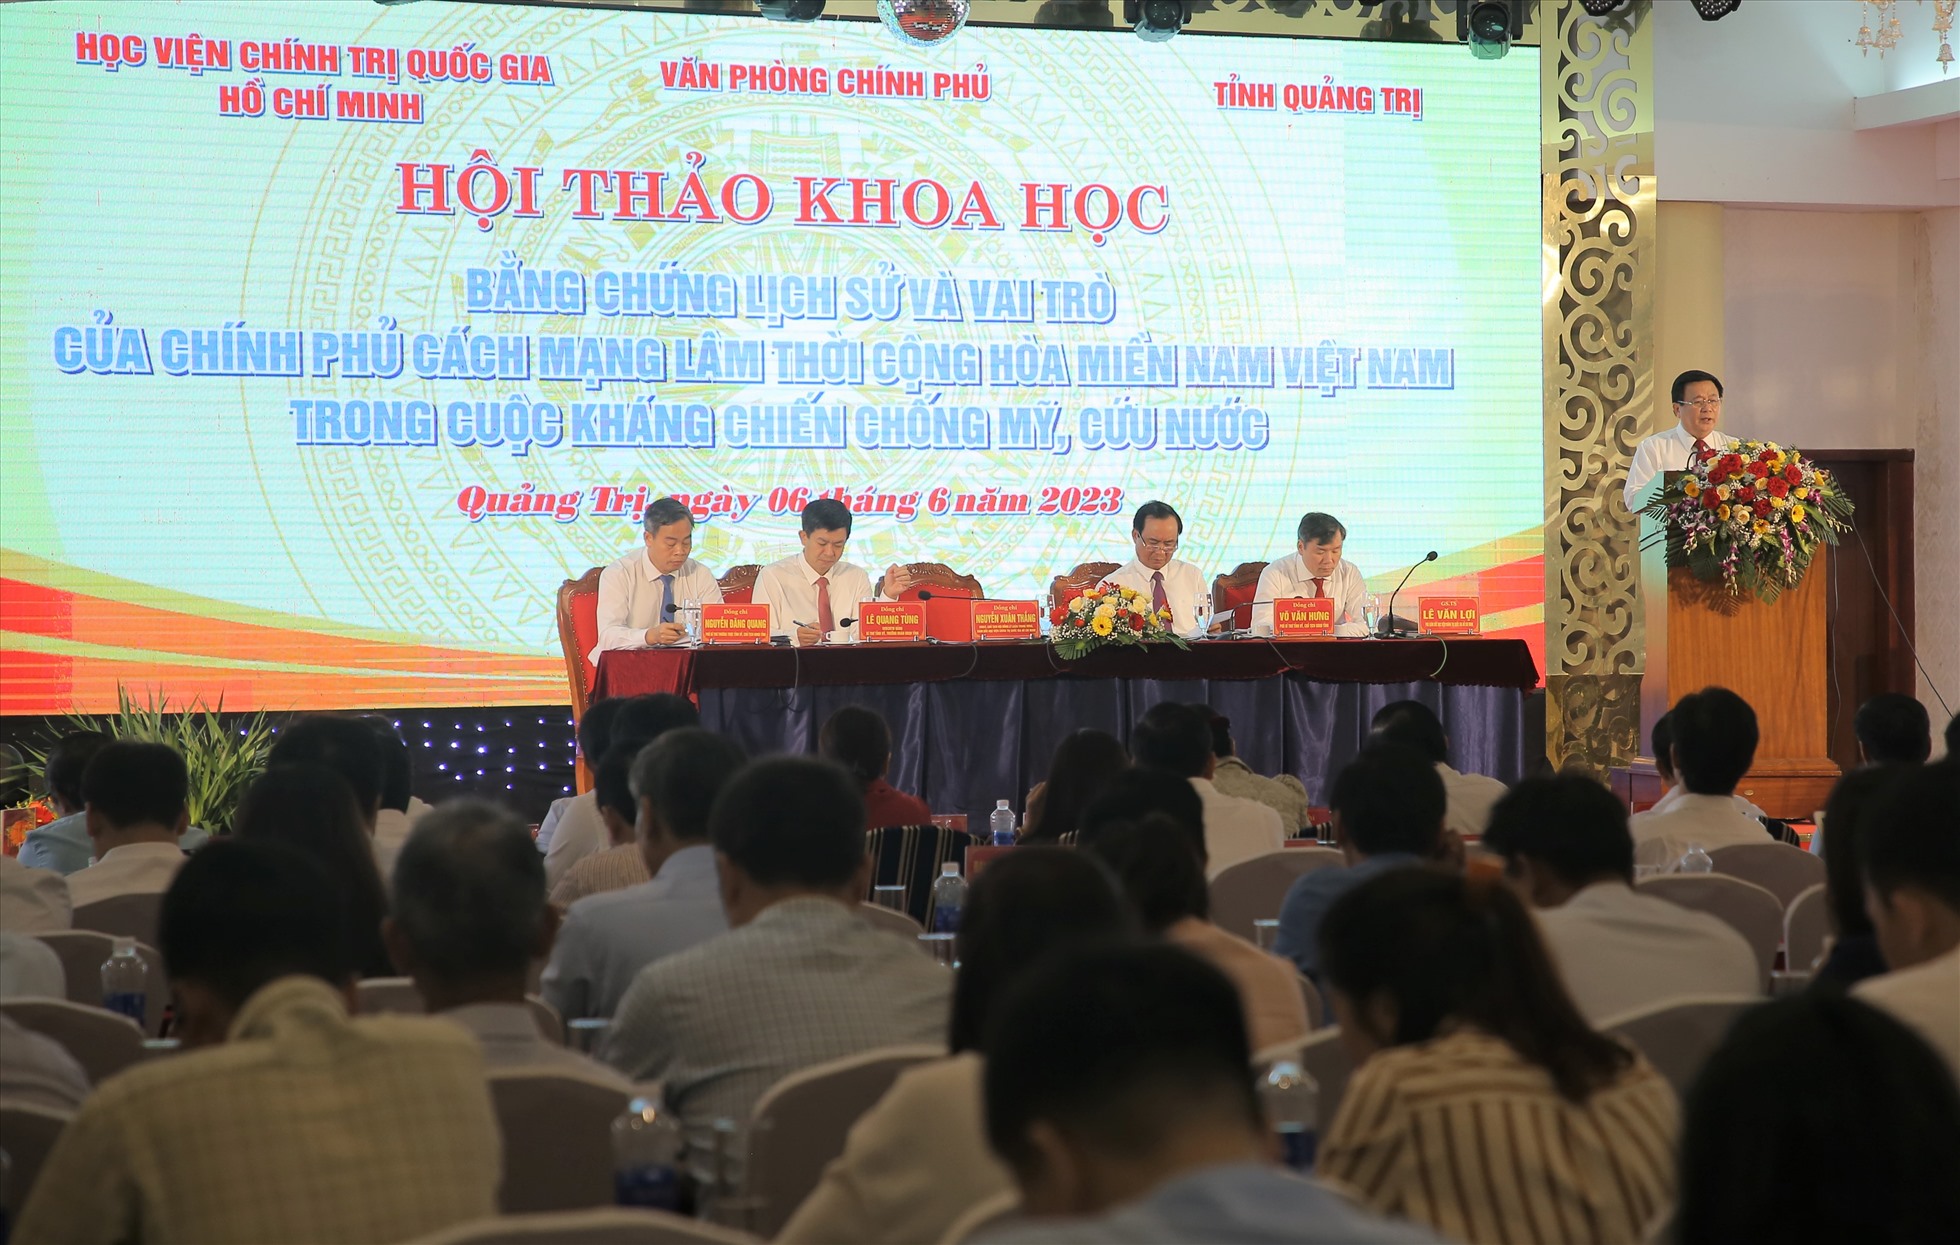 Toàn cảnh Hội thảo Bằng chứng lịch sử và vai trò của Chính phủ Cách mạng lâm thời Cộng hòa miền Nam Việt Nam. Ảnh: Hưng Thơ.